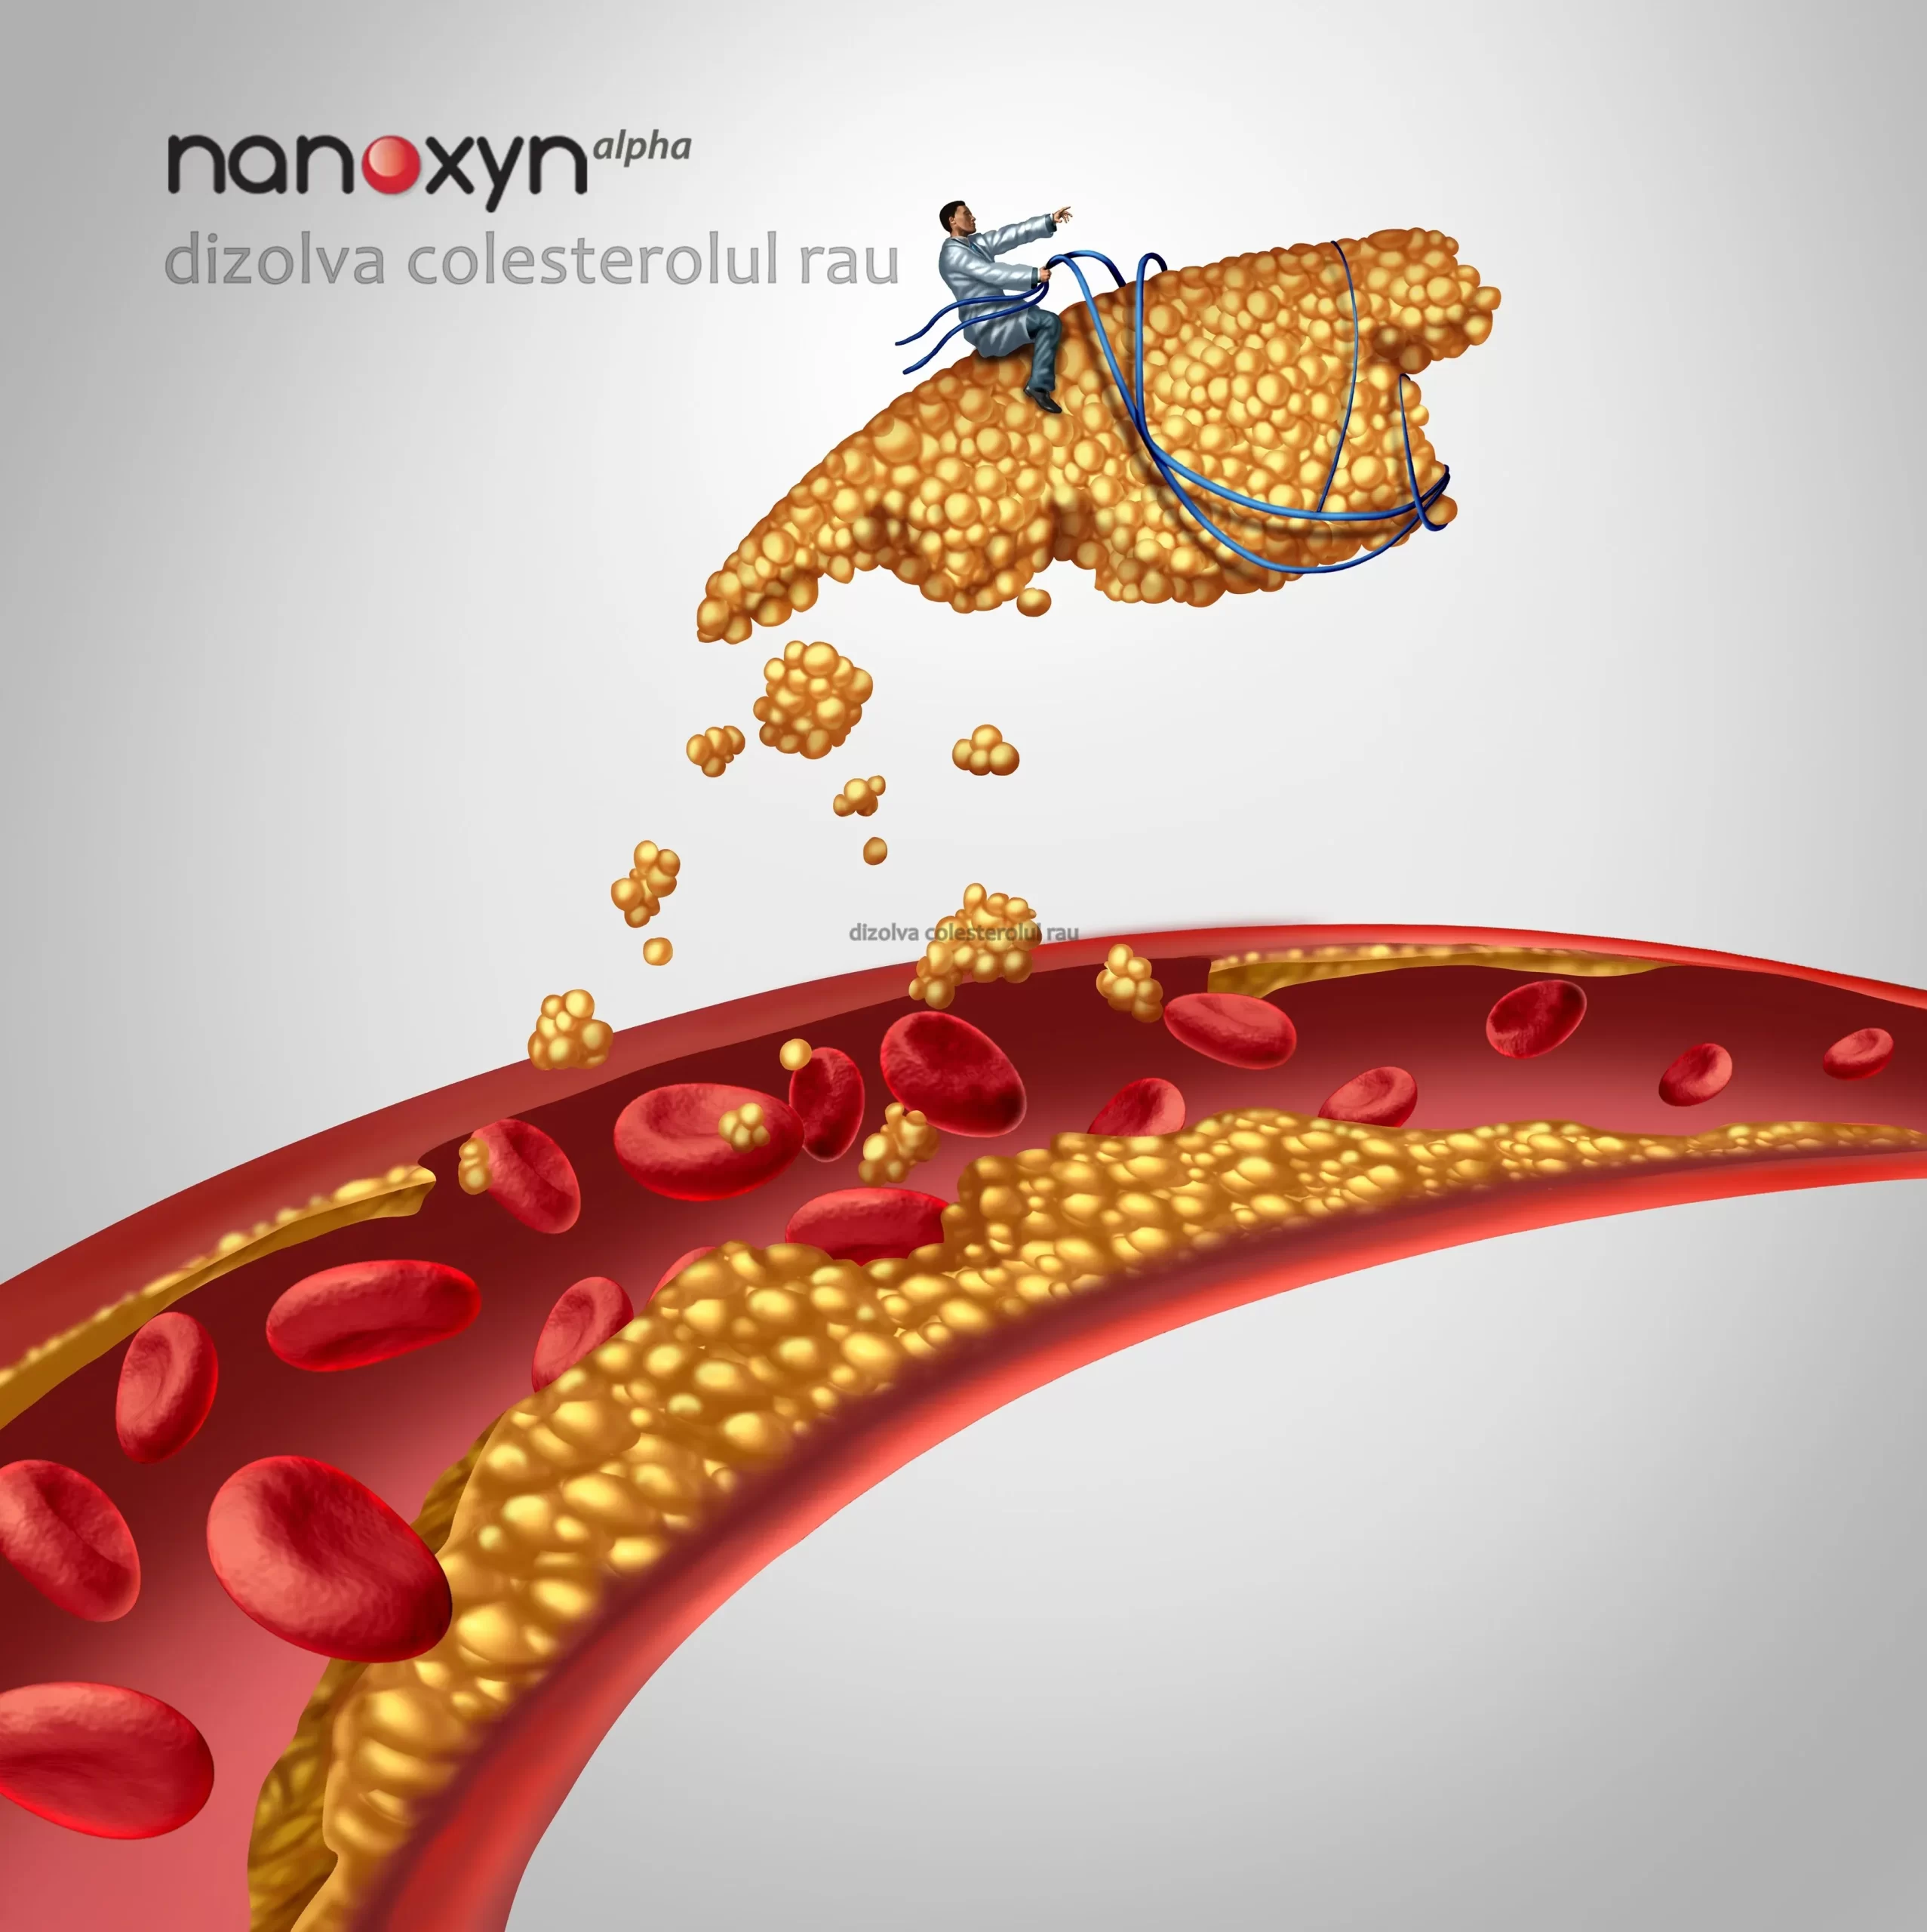 nanoxyn